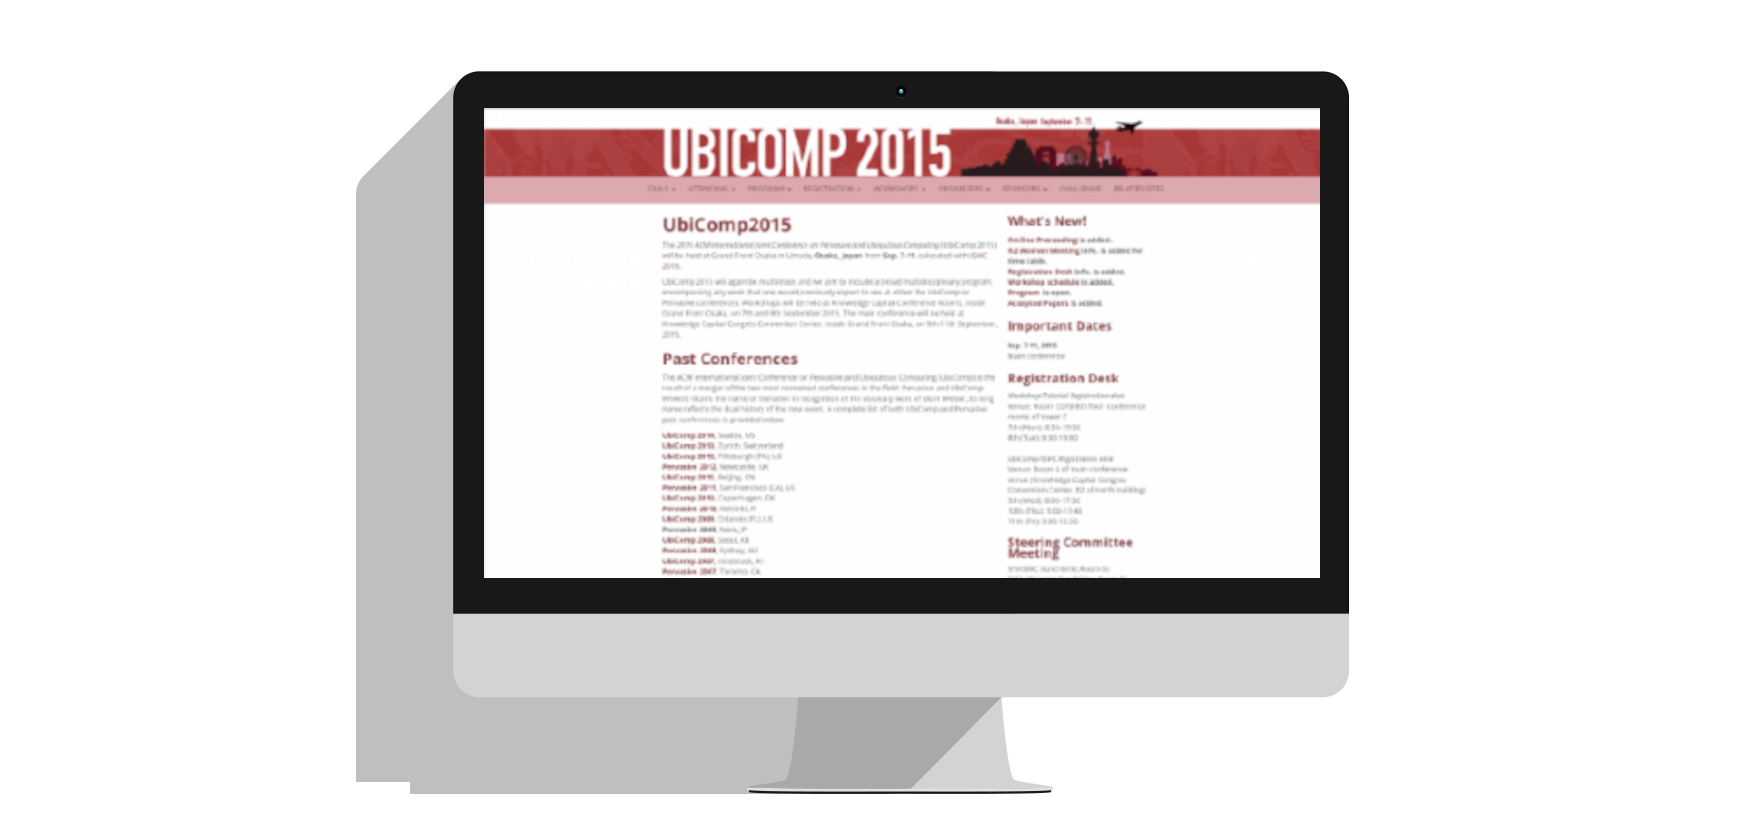 UBICOMP2015